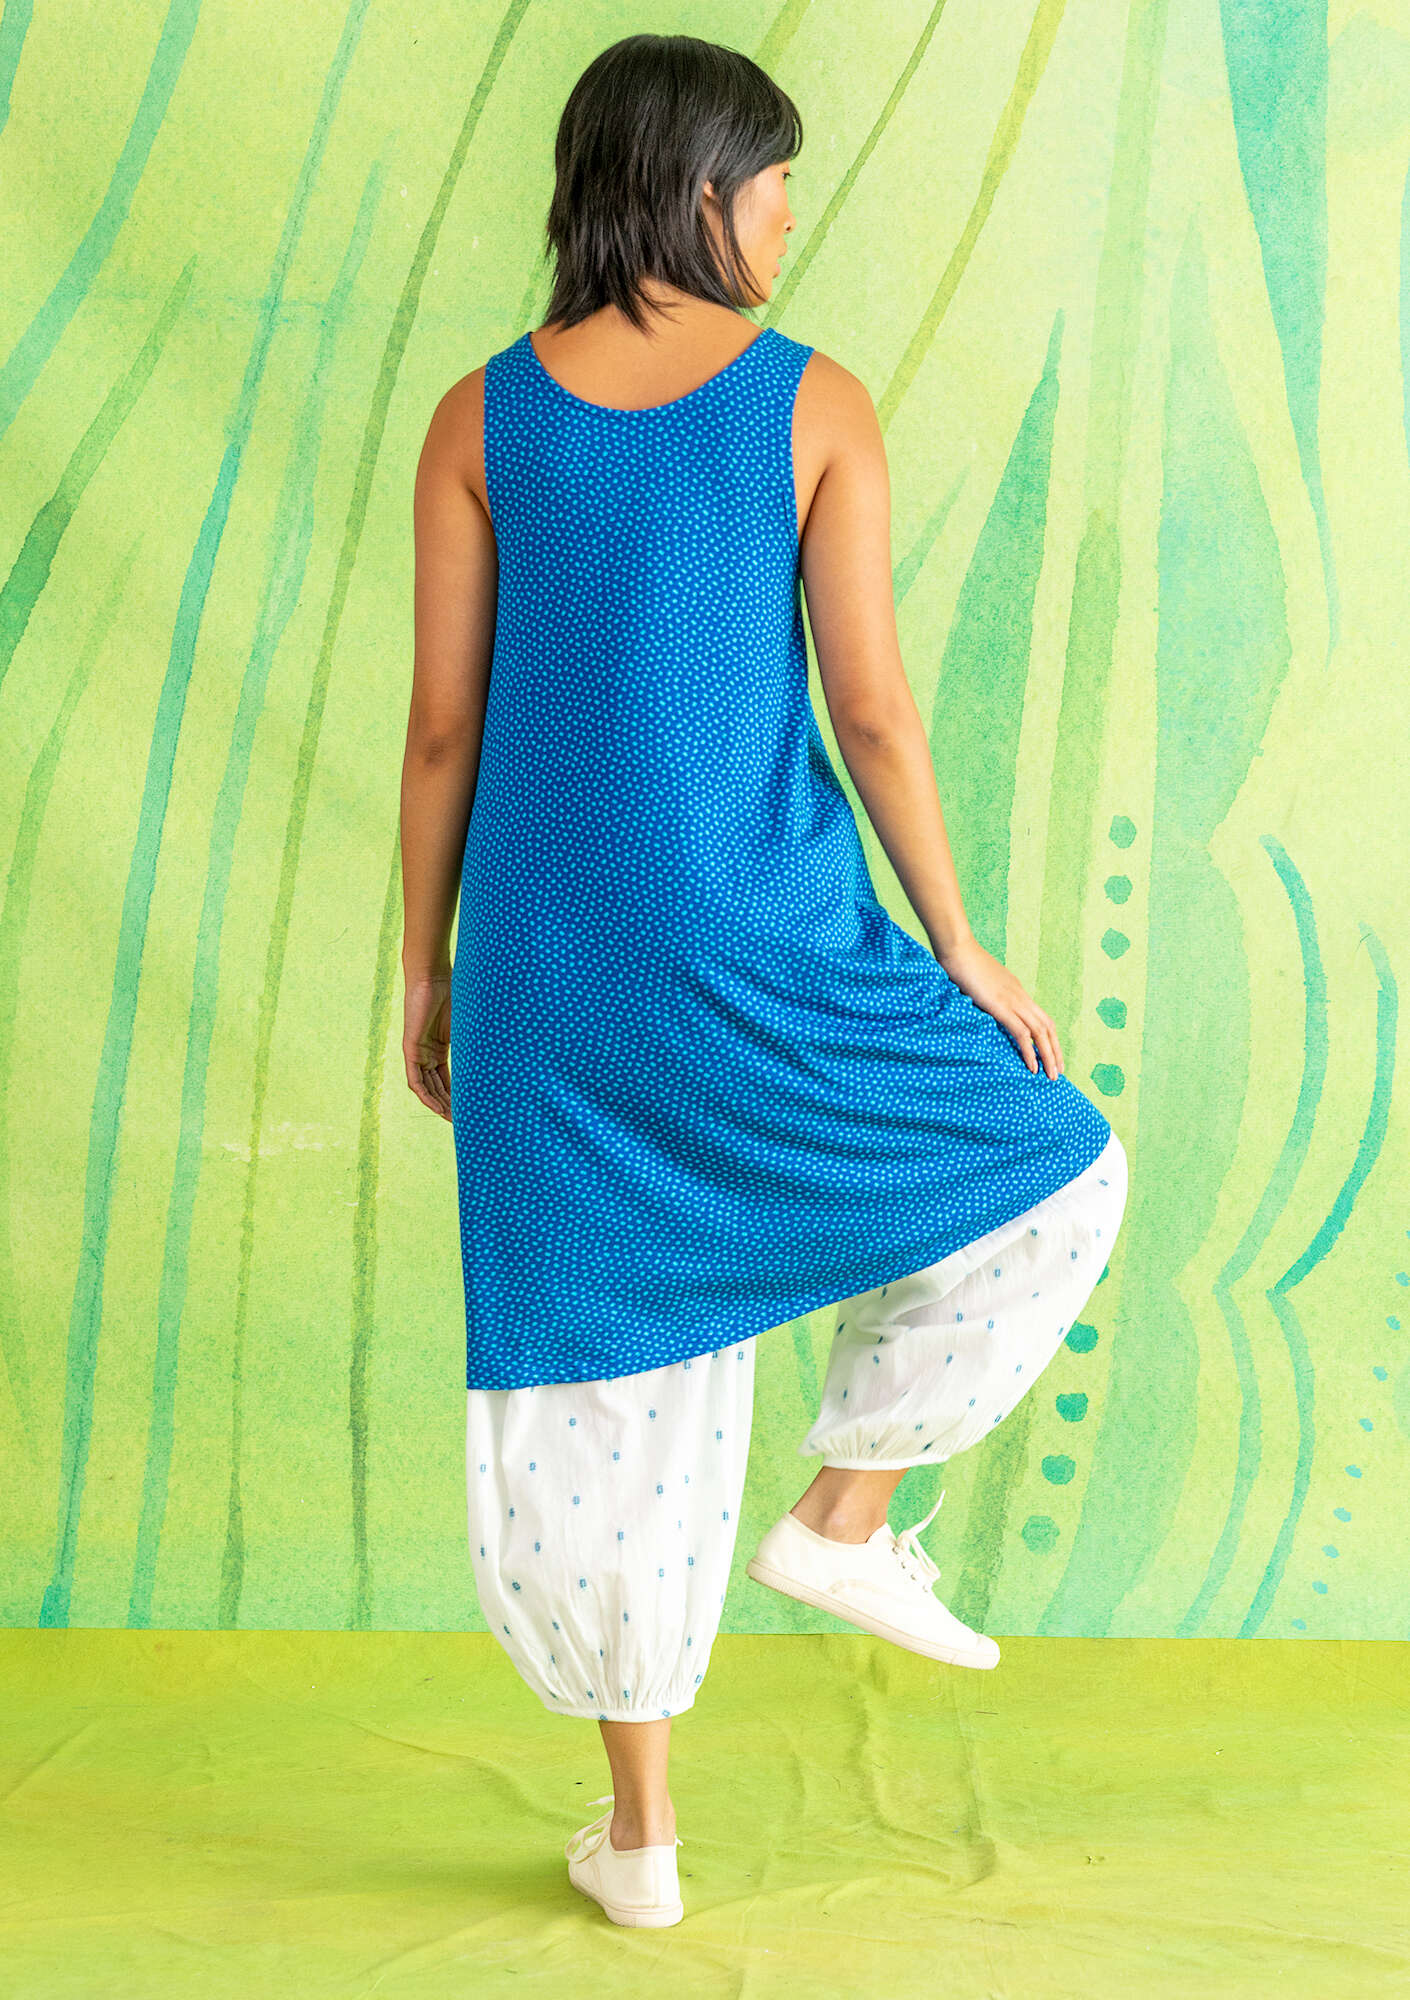 “Tilde” sleeveless lyocell/elastane jersey dress porcelain blue/patterned